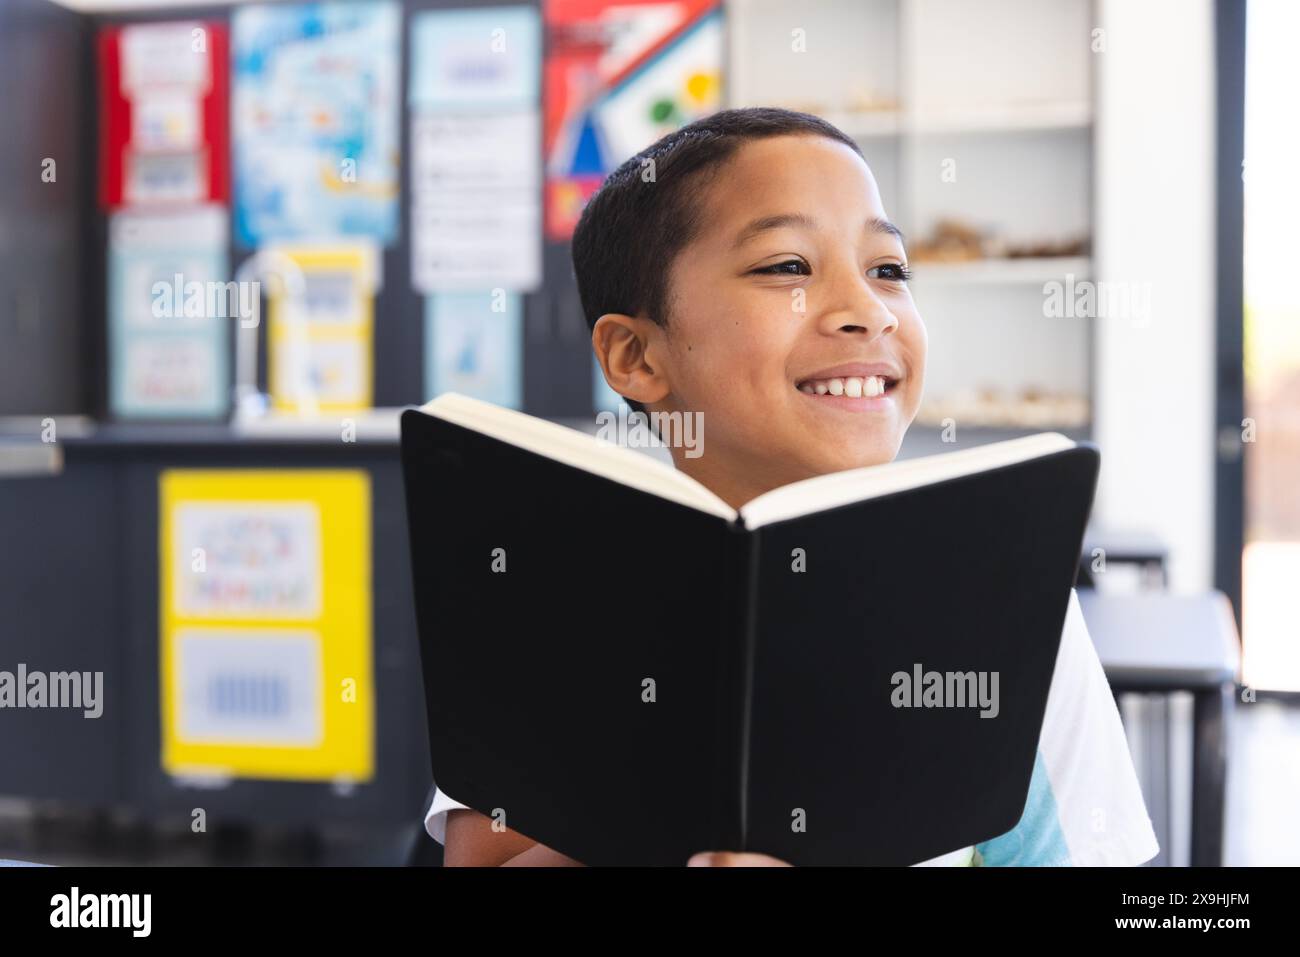 Un ragazzo birazziale ama leggere un libro in classe a scuola. Il suo sorriso luminoso riflette la gioia di imparare in un ambiente educativo. Foto Stock